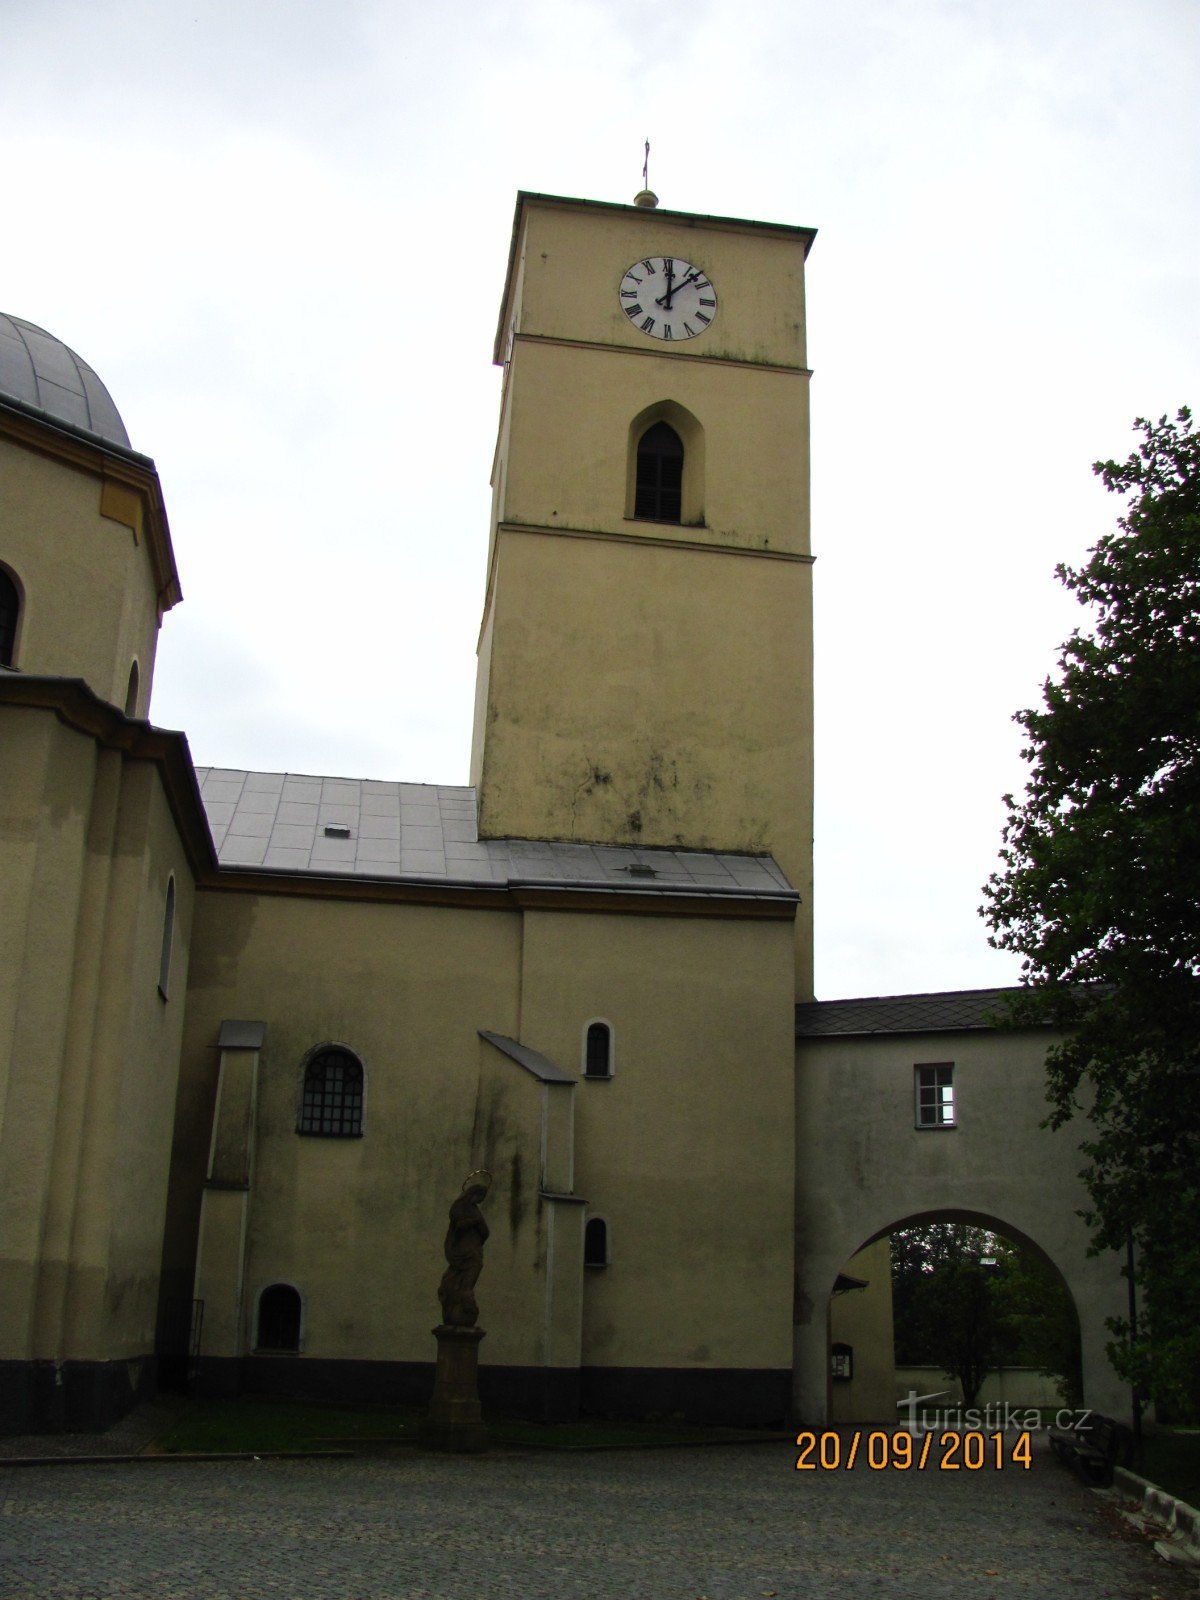 Kyrkan St. Kateřiny i Klimkovice